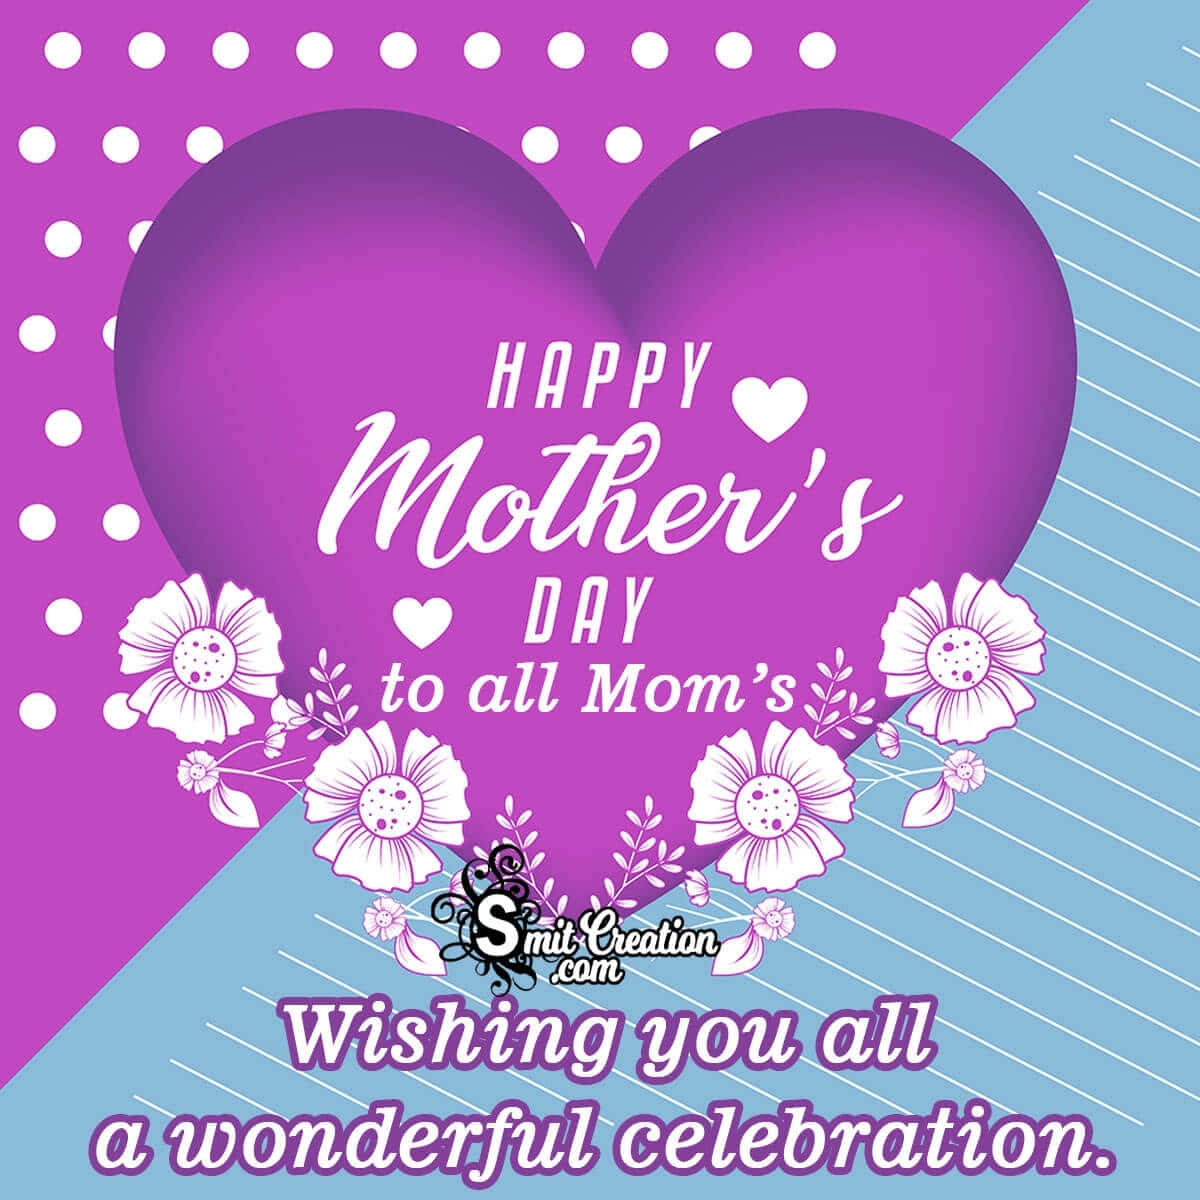 ¡felizdía De La Madre! Celebra El Amor Y El Vínculo Especial Entre Madres E Hijos.